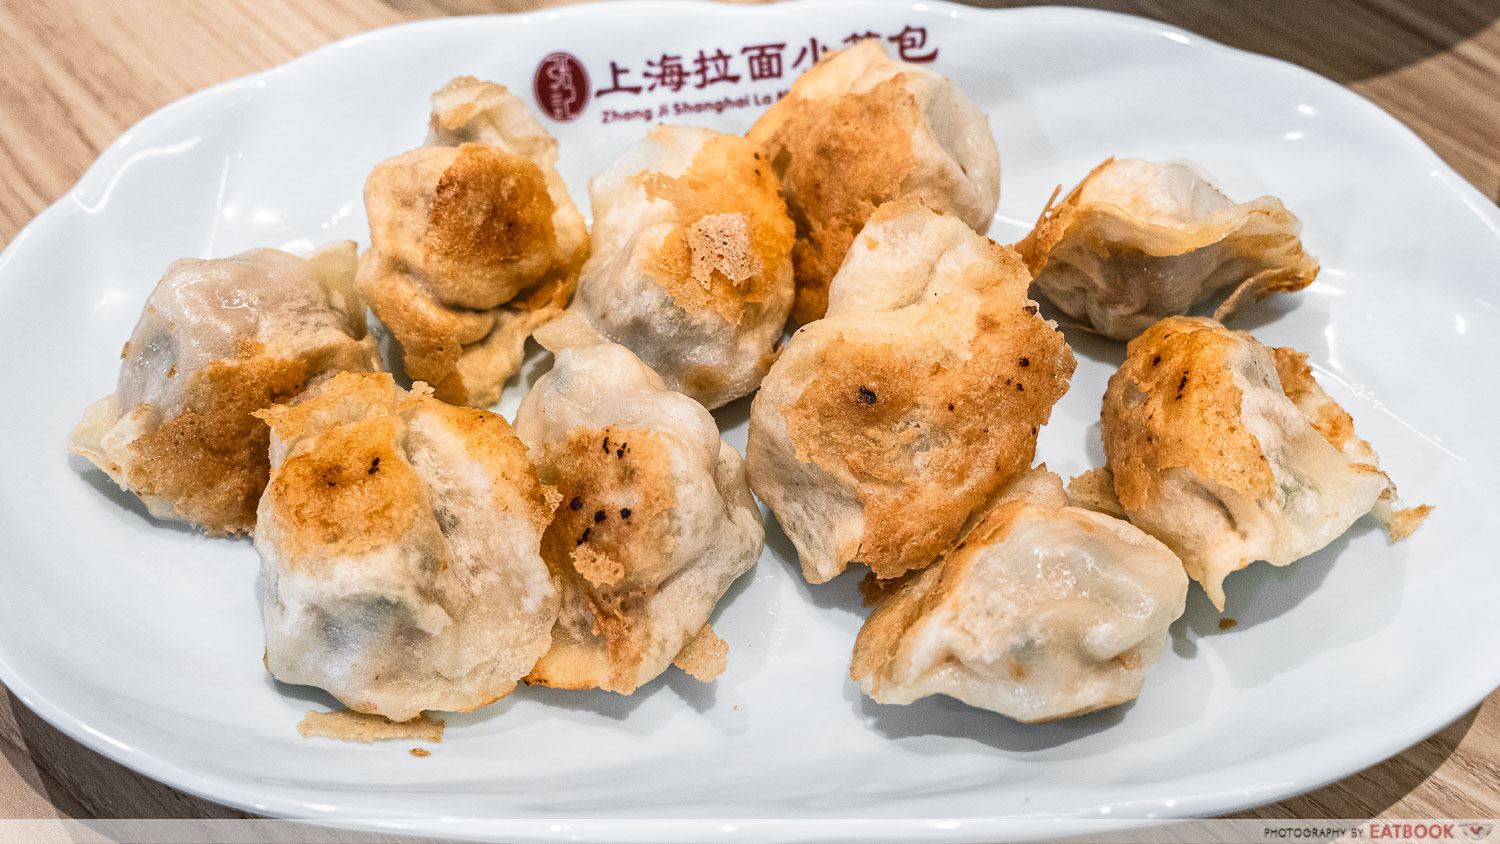 Zhang Ji Shanghai La Mian Xiao Long Bao - panfried dumplings intro